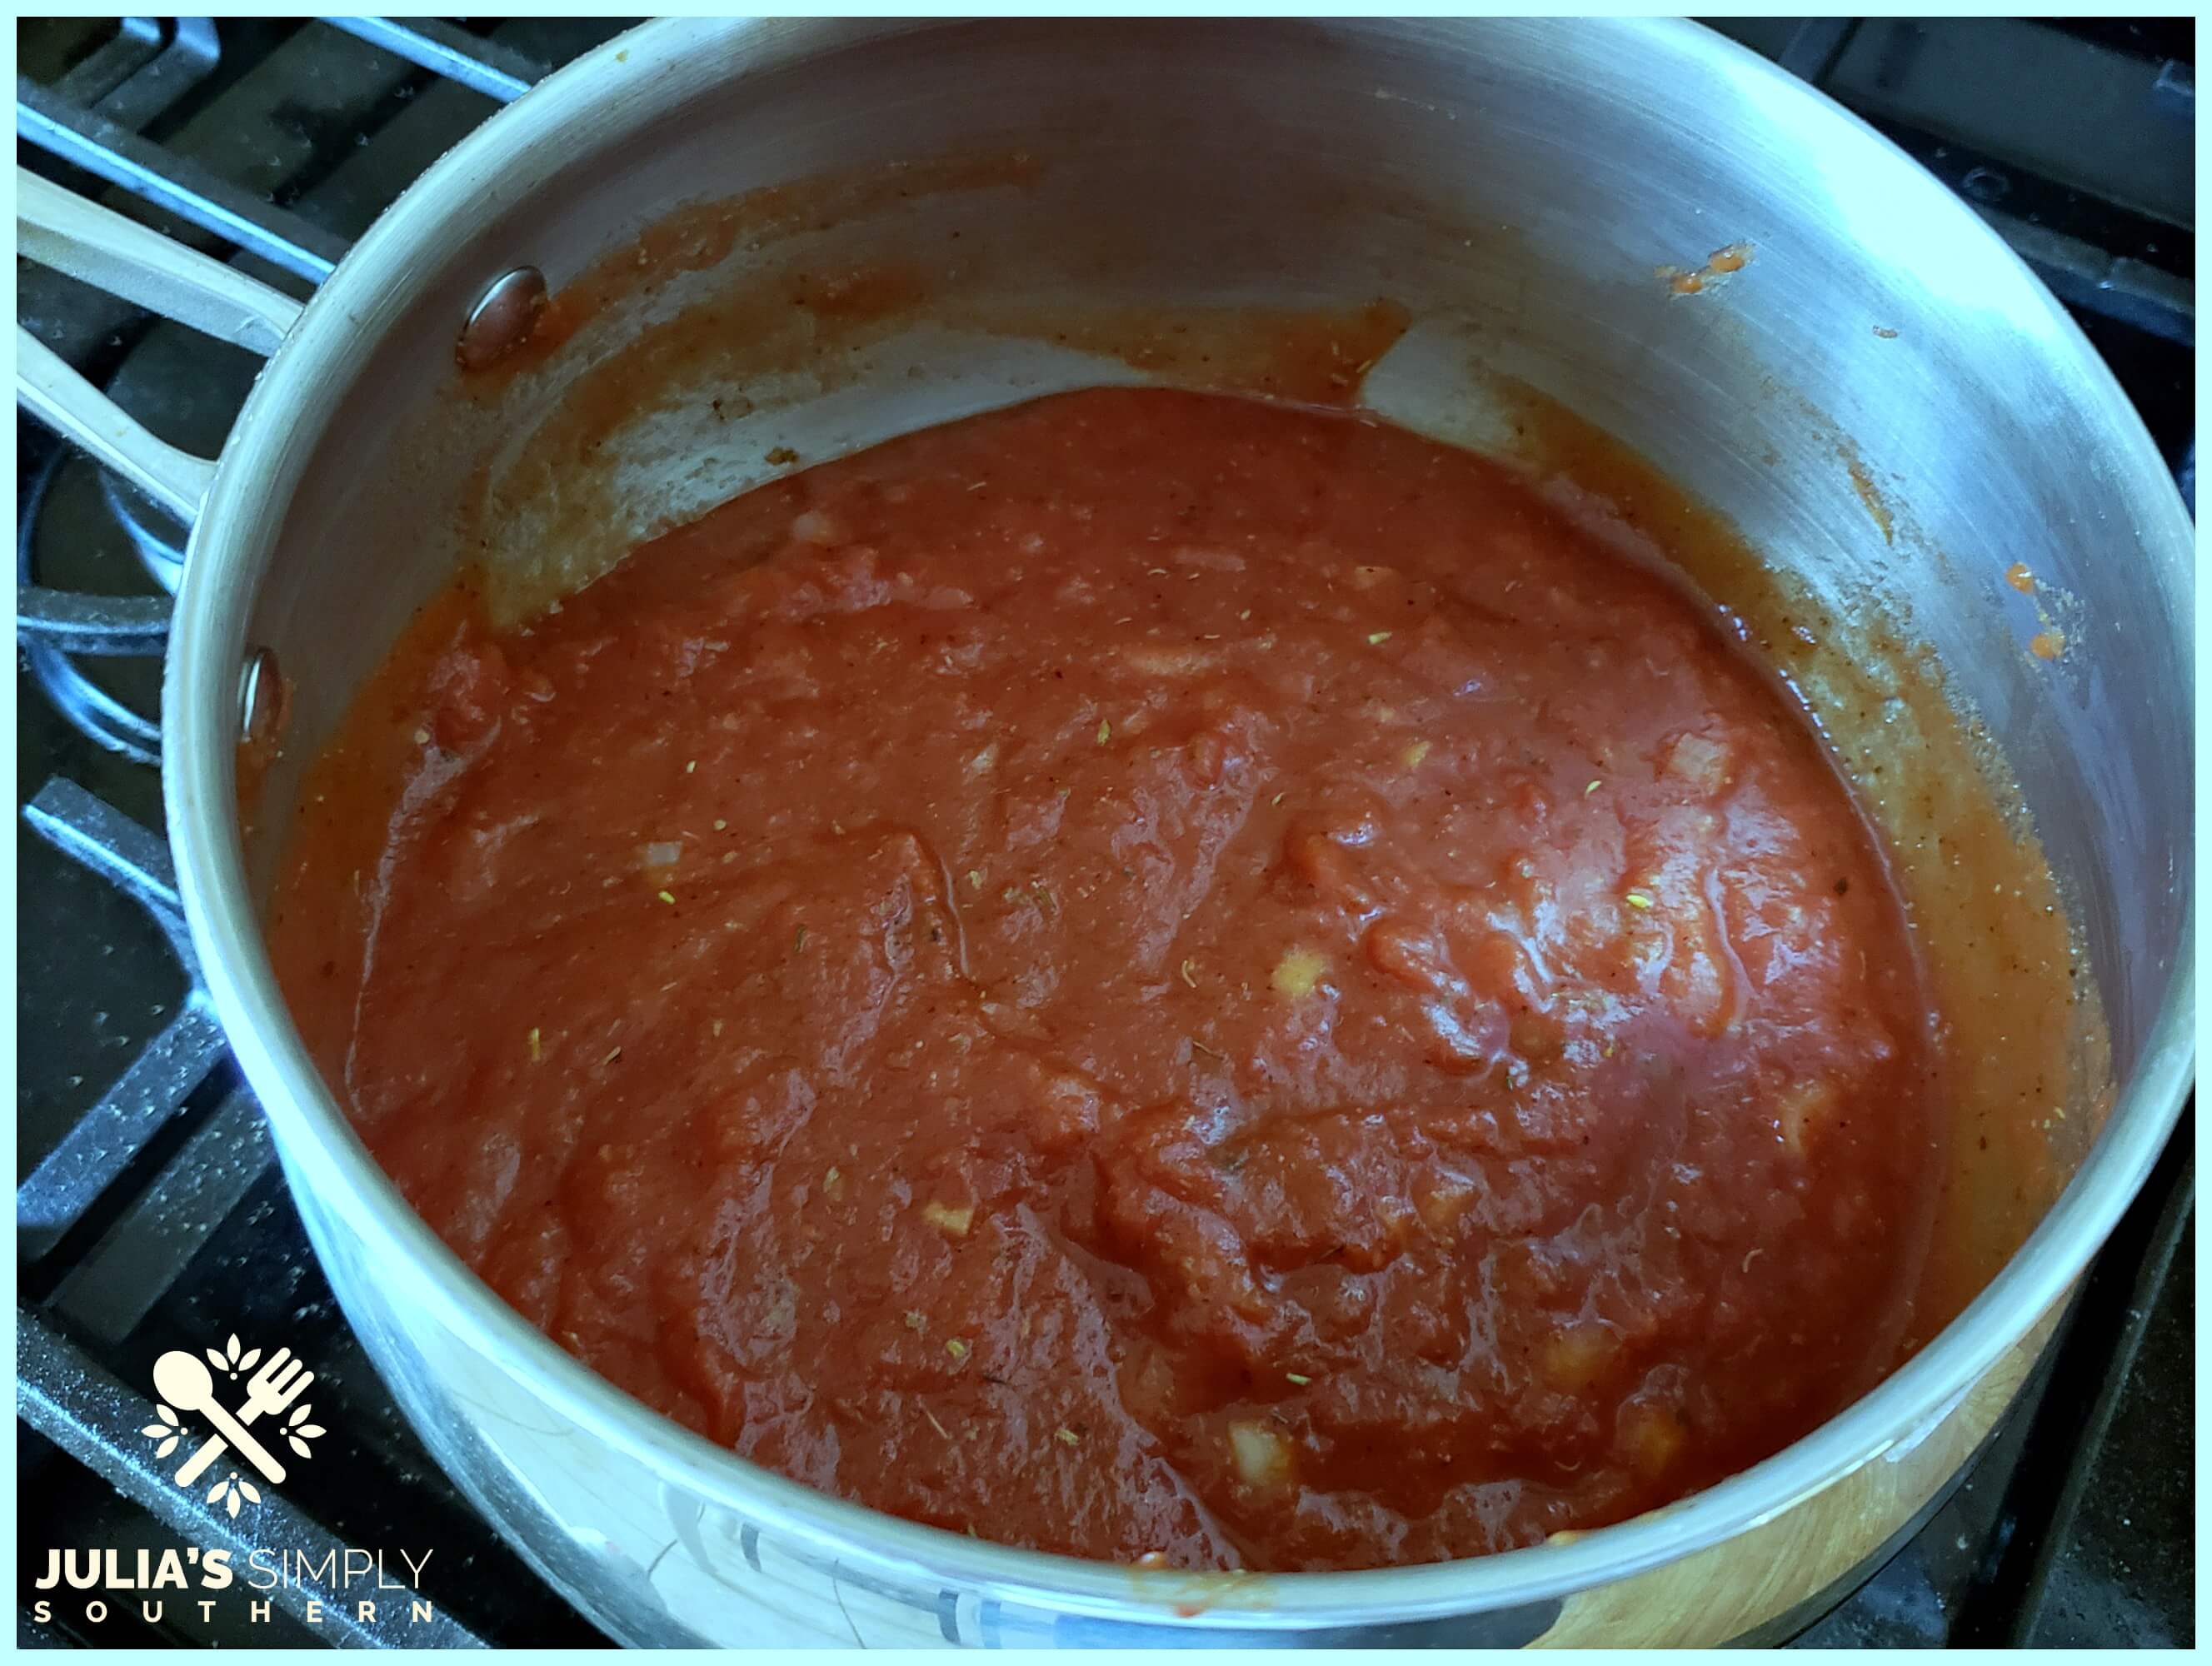 Pot simmering a batch of homemade sauce